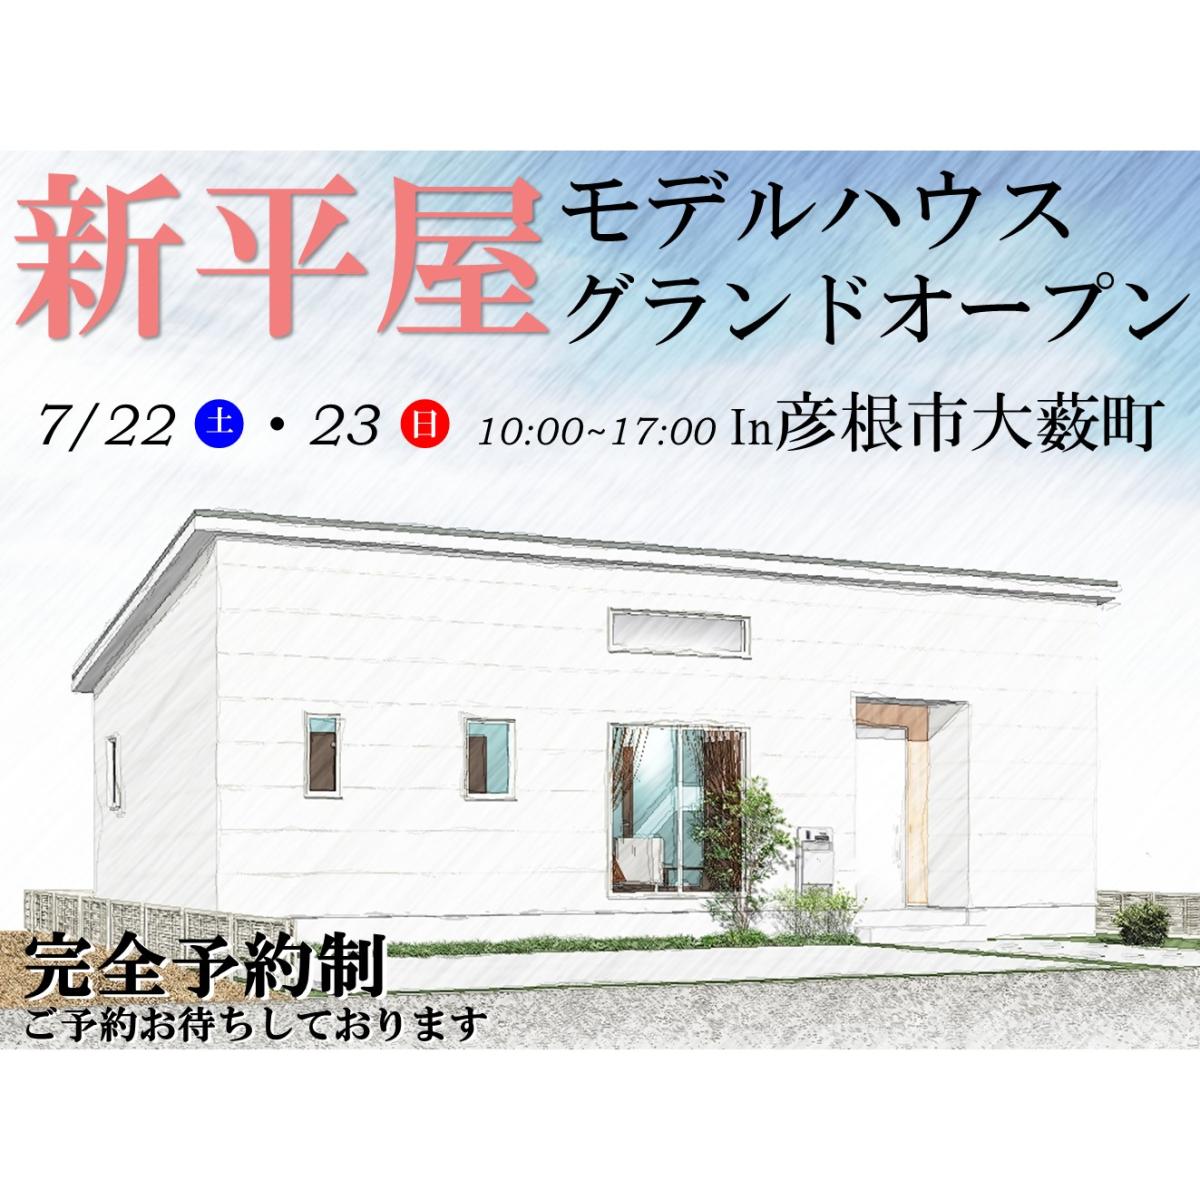 ”【彦根店】新平屋モデルハウス グランドオープン!!